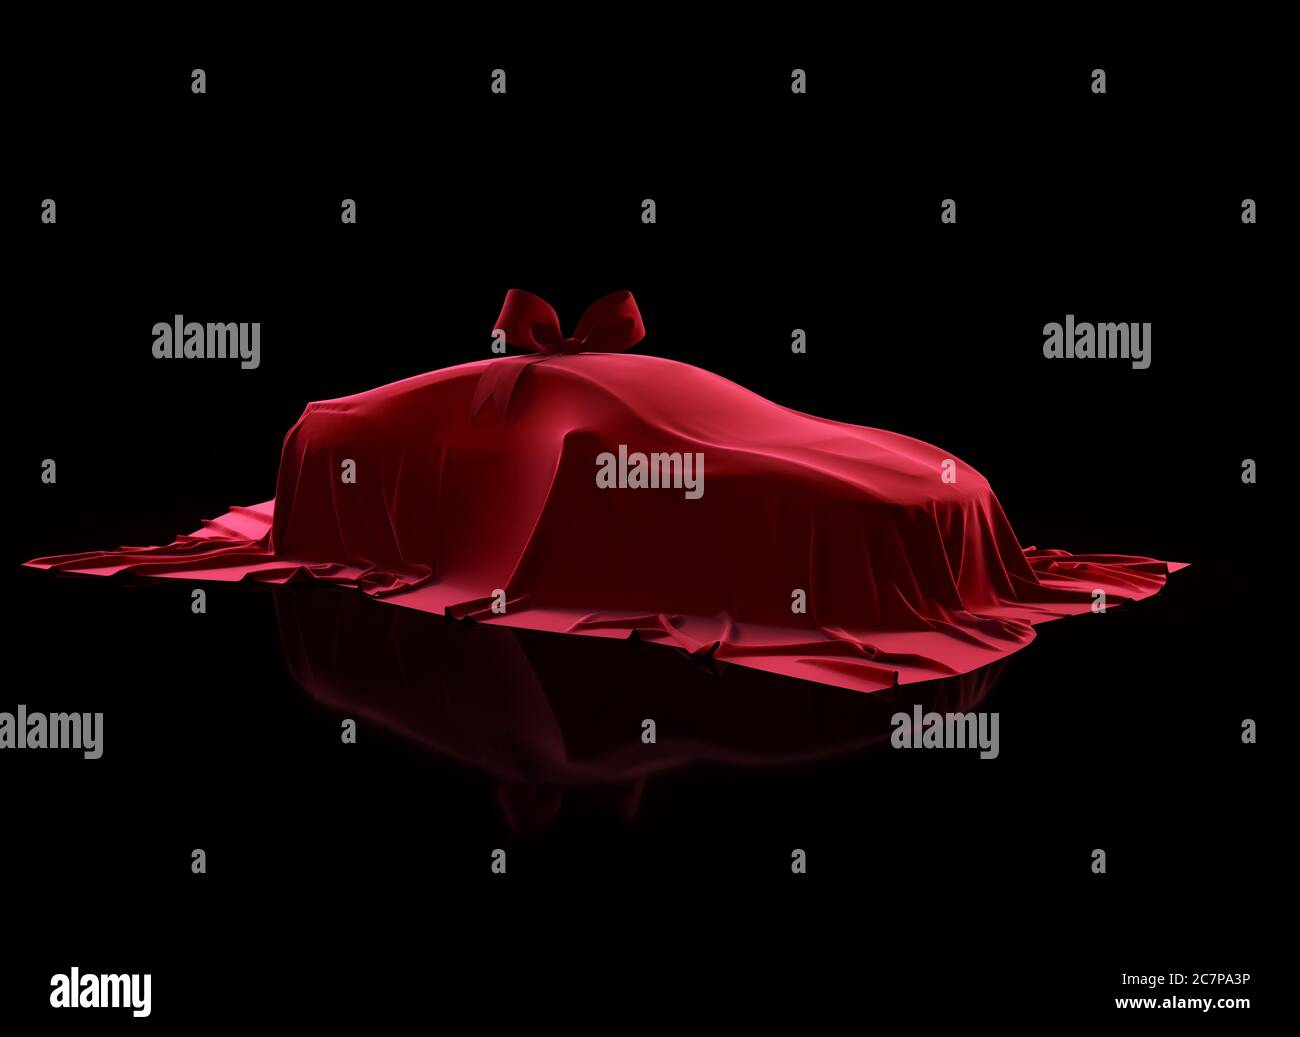 Cadeau voiture recouvert de tissu en velours rouge avec noeud cadeau sur fond noir. Enroulés par un chiffon rouge Banque D'Images